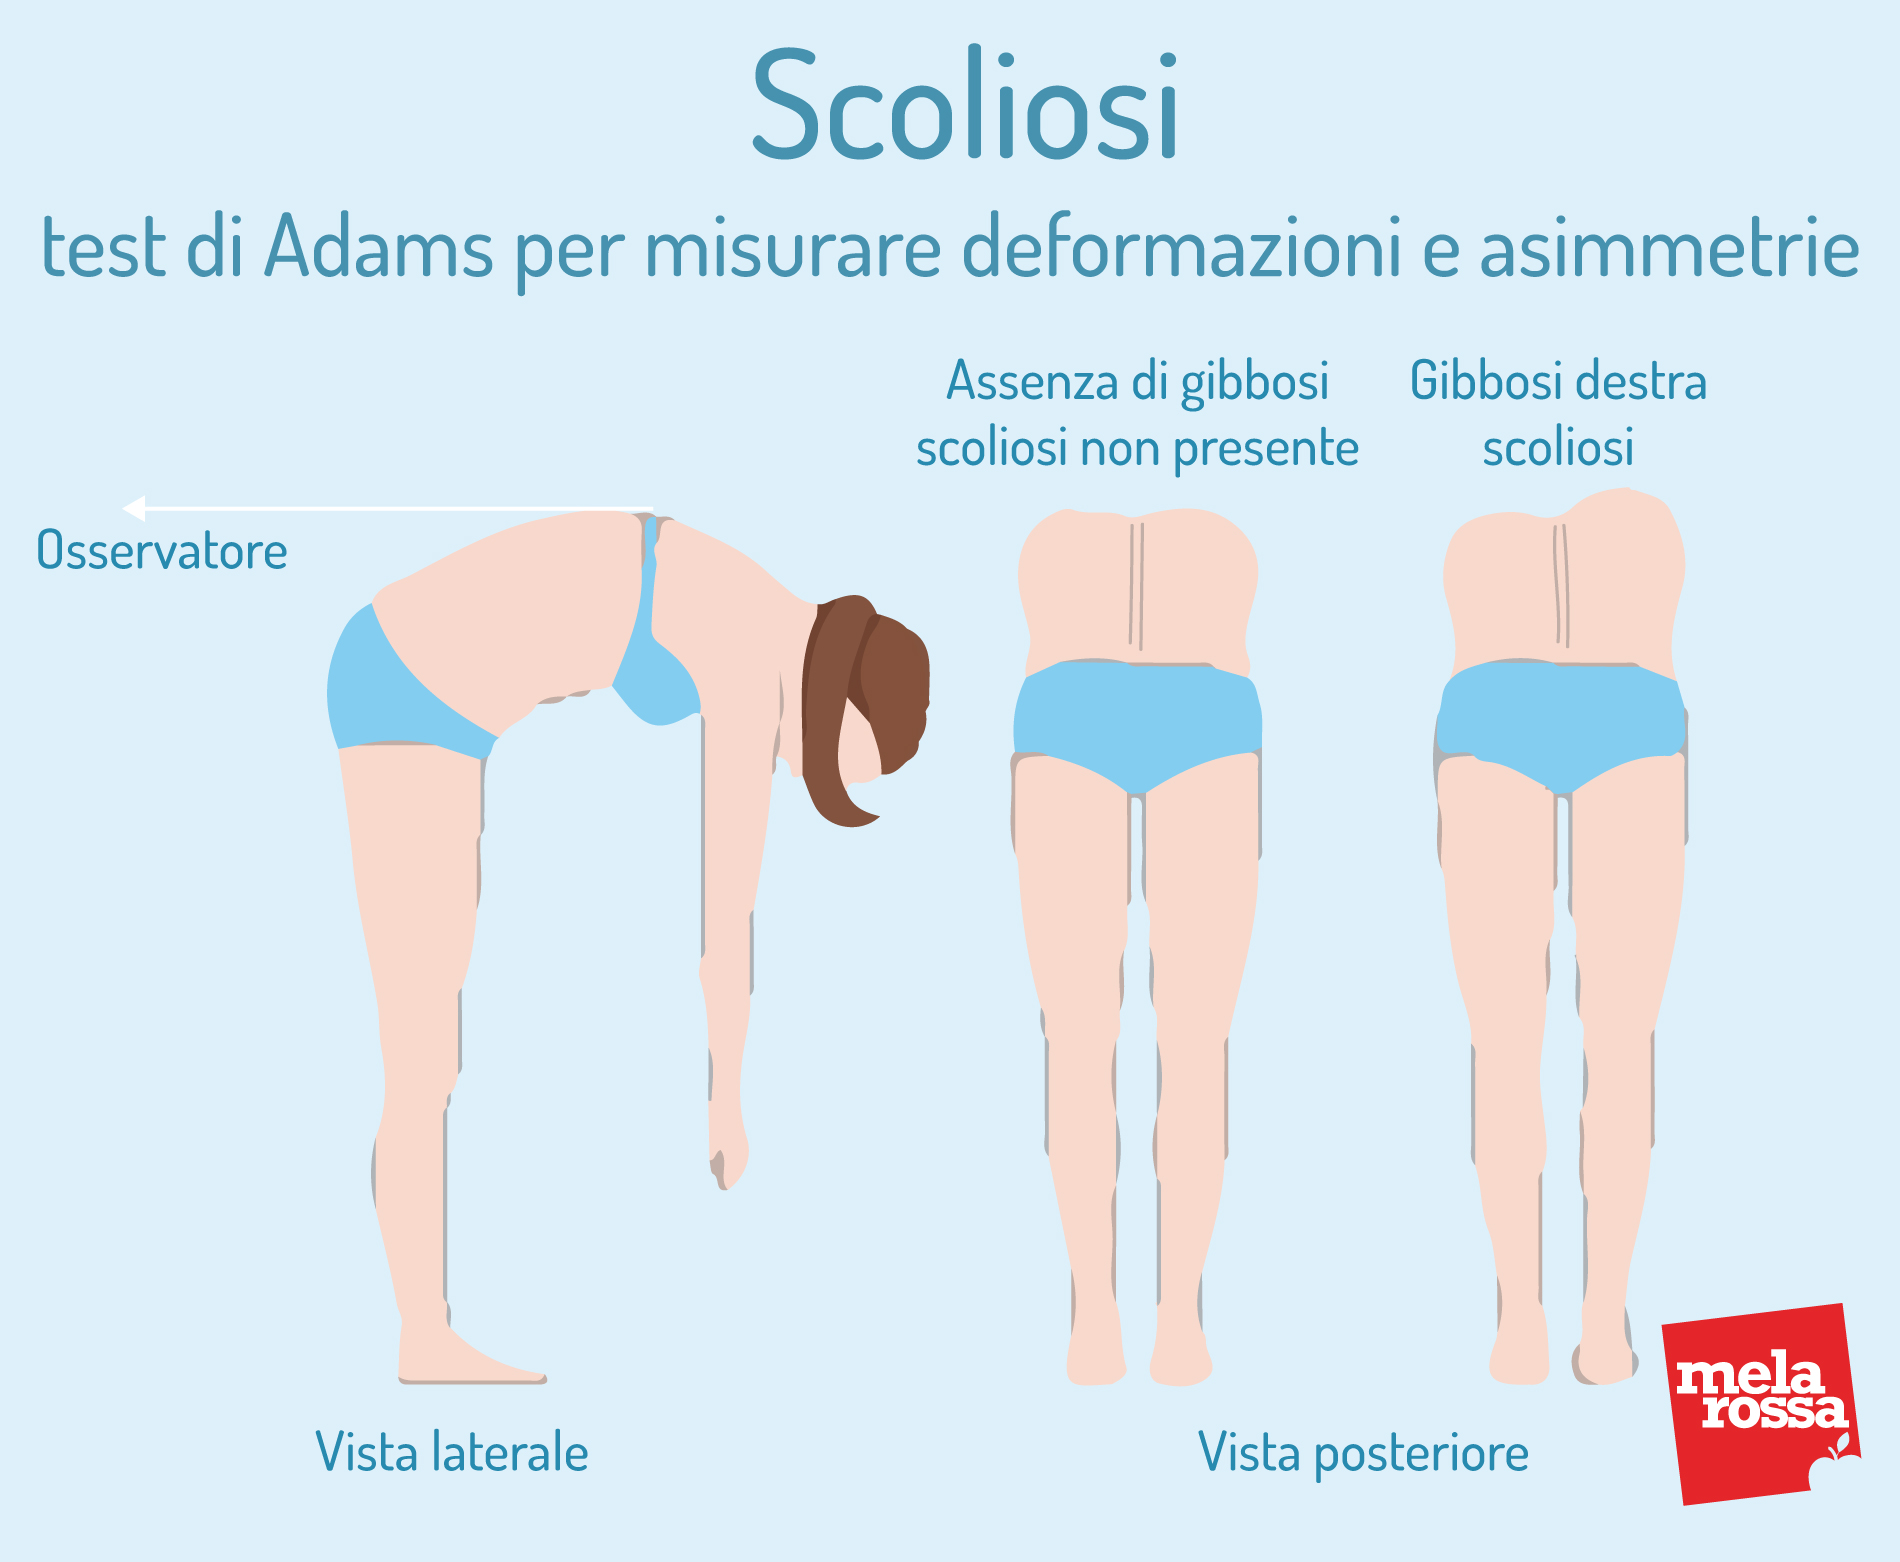 Scoliosi: test di Adams per misurare deformzioni